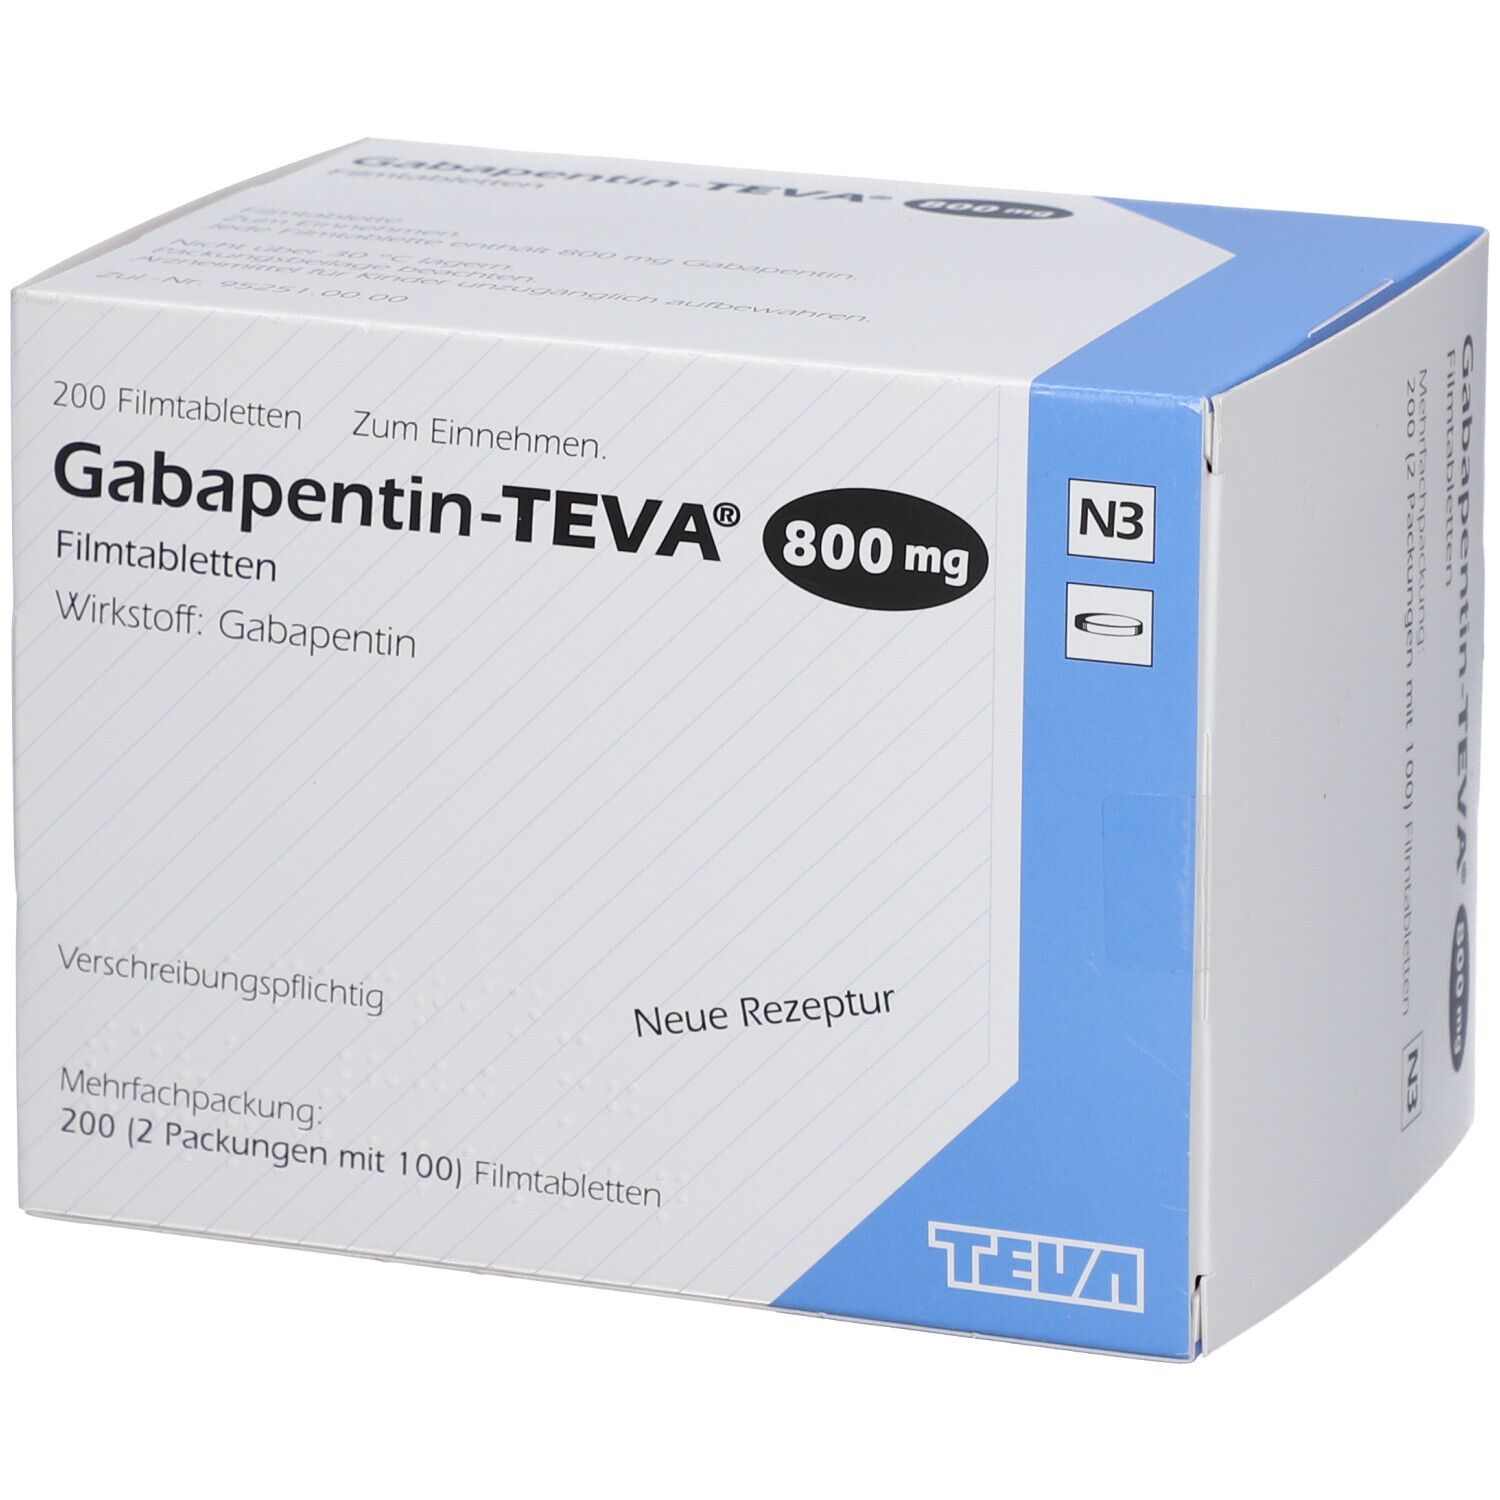 Габапентин 200. Нейронтин 800 мг. Таблетки от эпилепсии габапентин. Габапентин таблетки. Габапентин 300 отзывы врачей